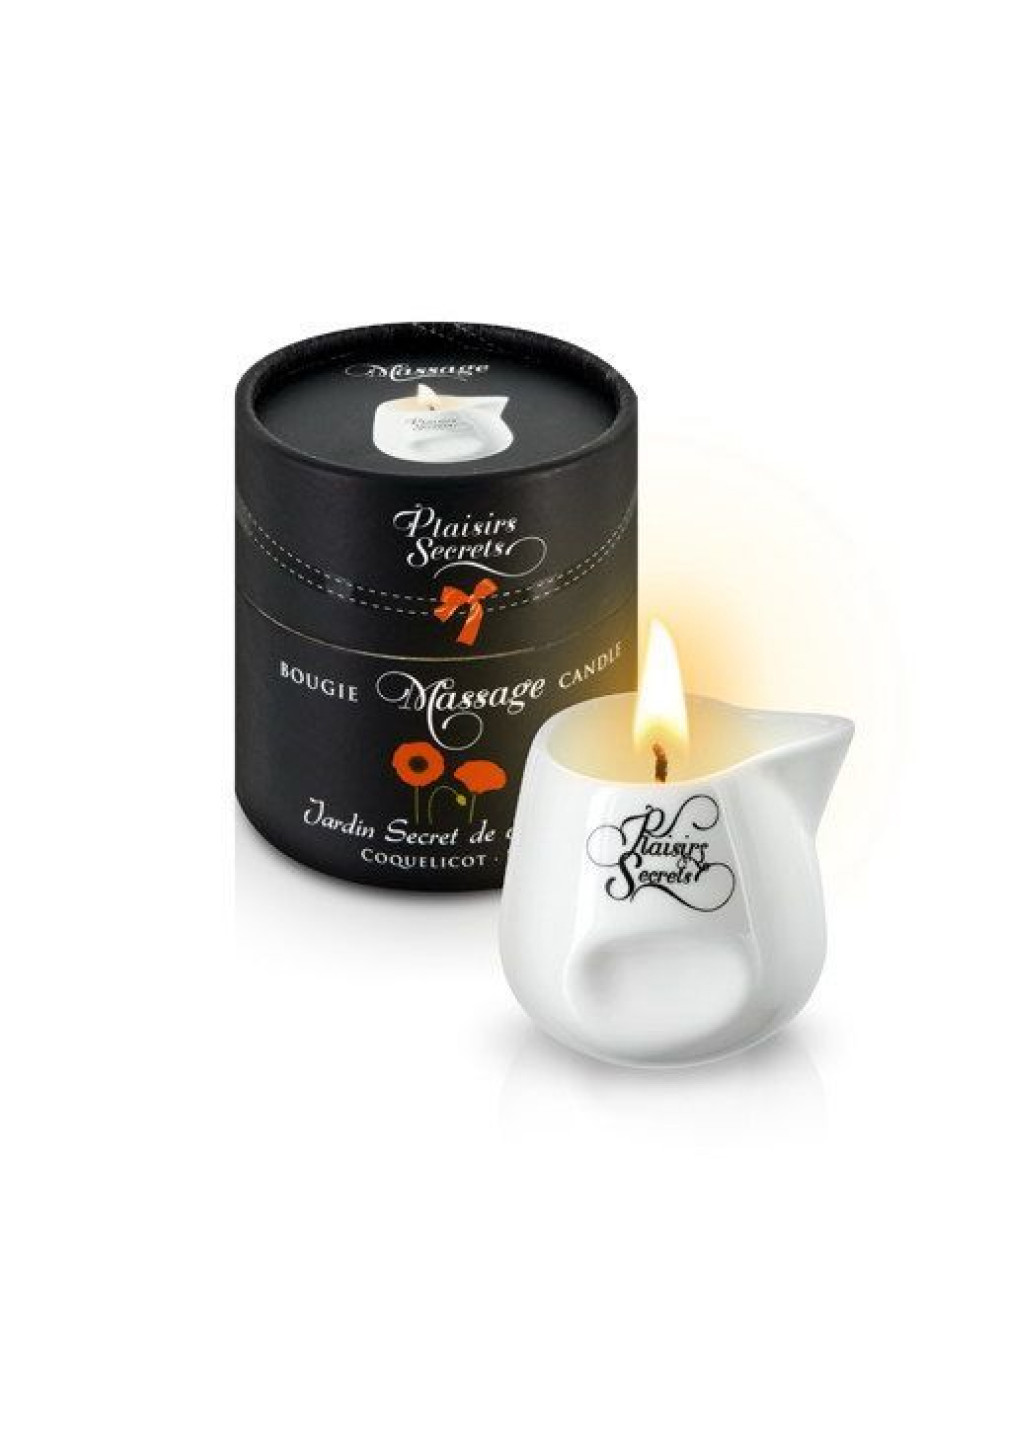 Массажная свеча Poppy (80 мл) подарочная упаковка, керамический сосуд Plaisirs Secrets (252022272)